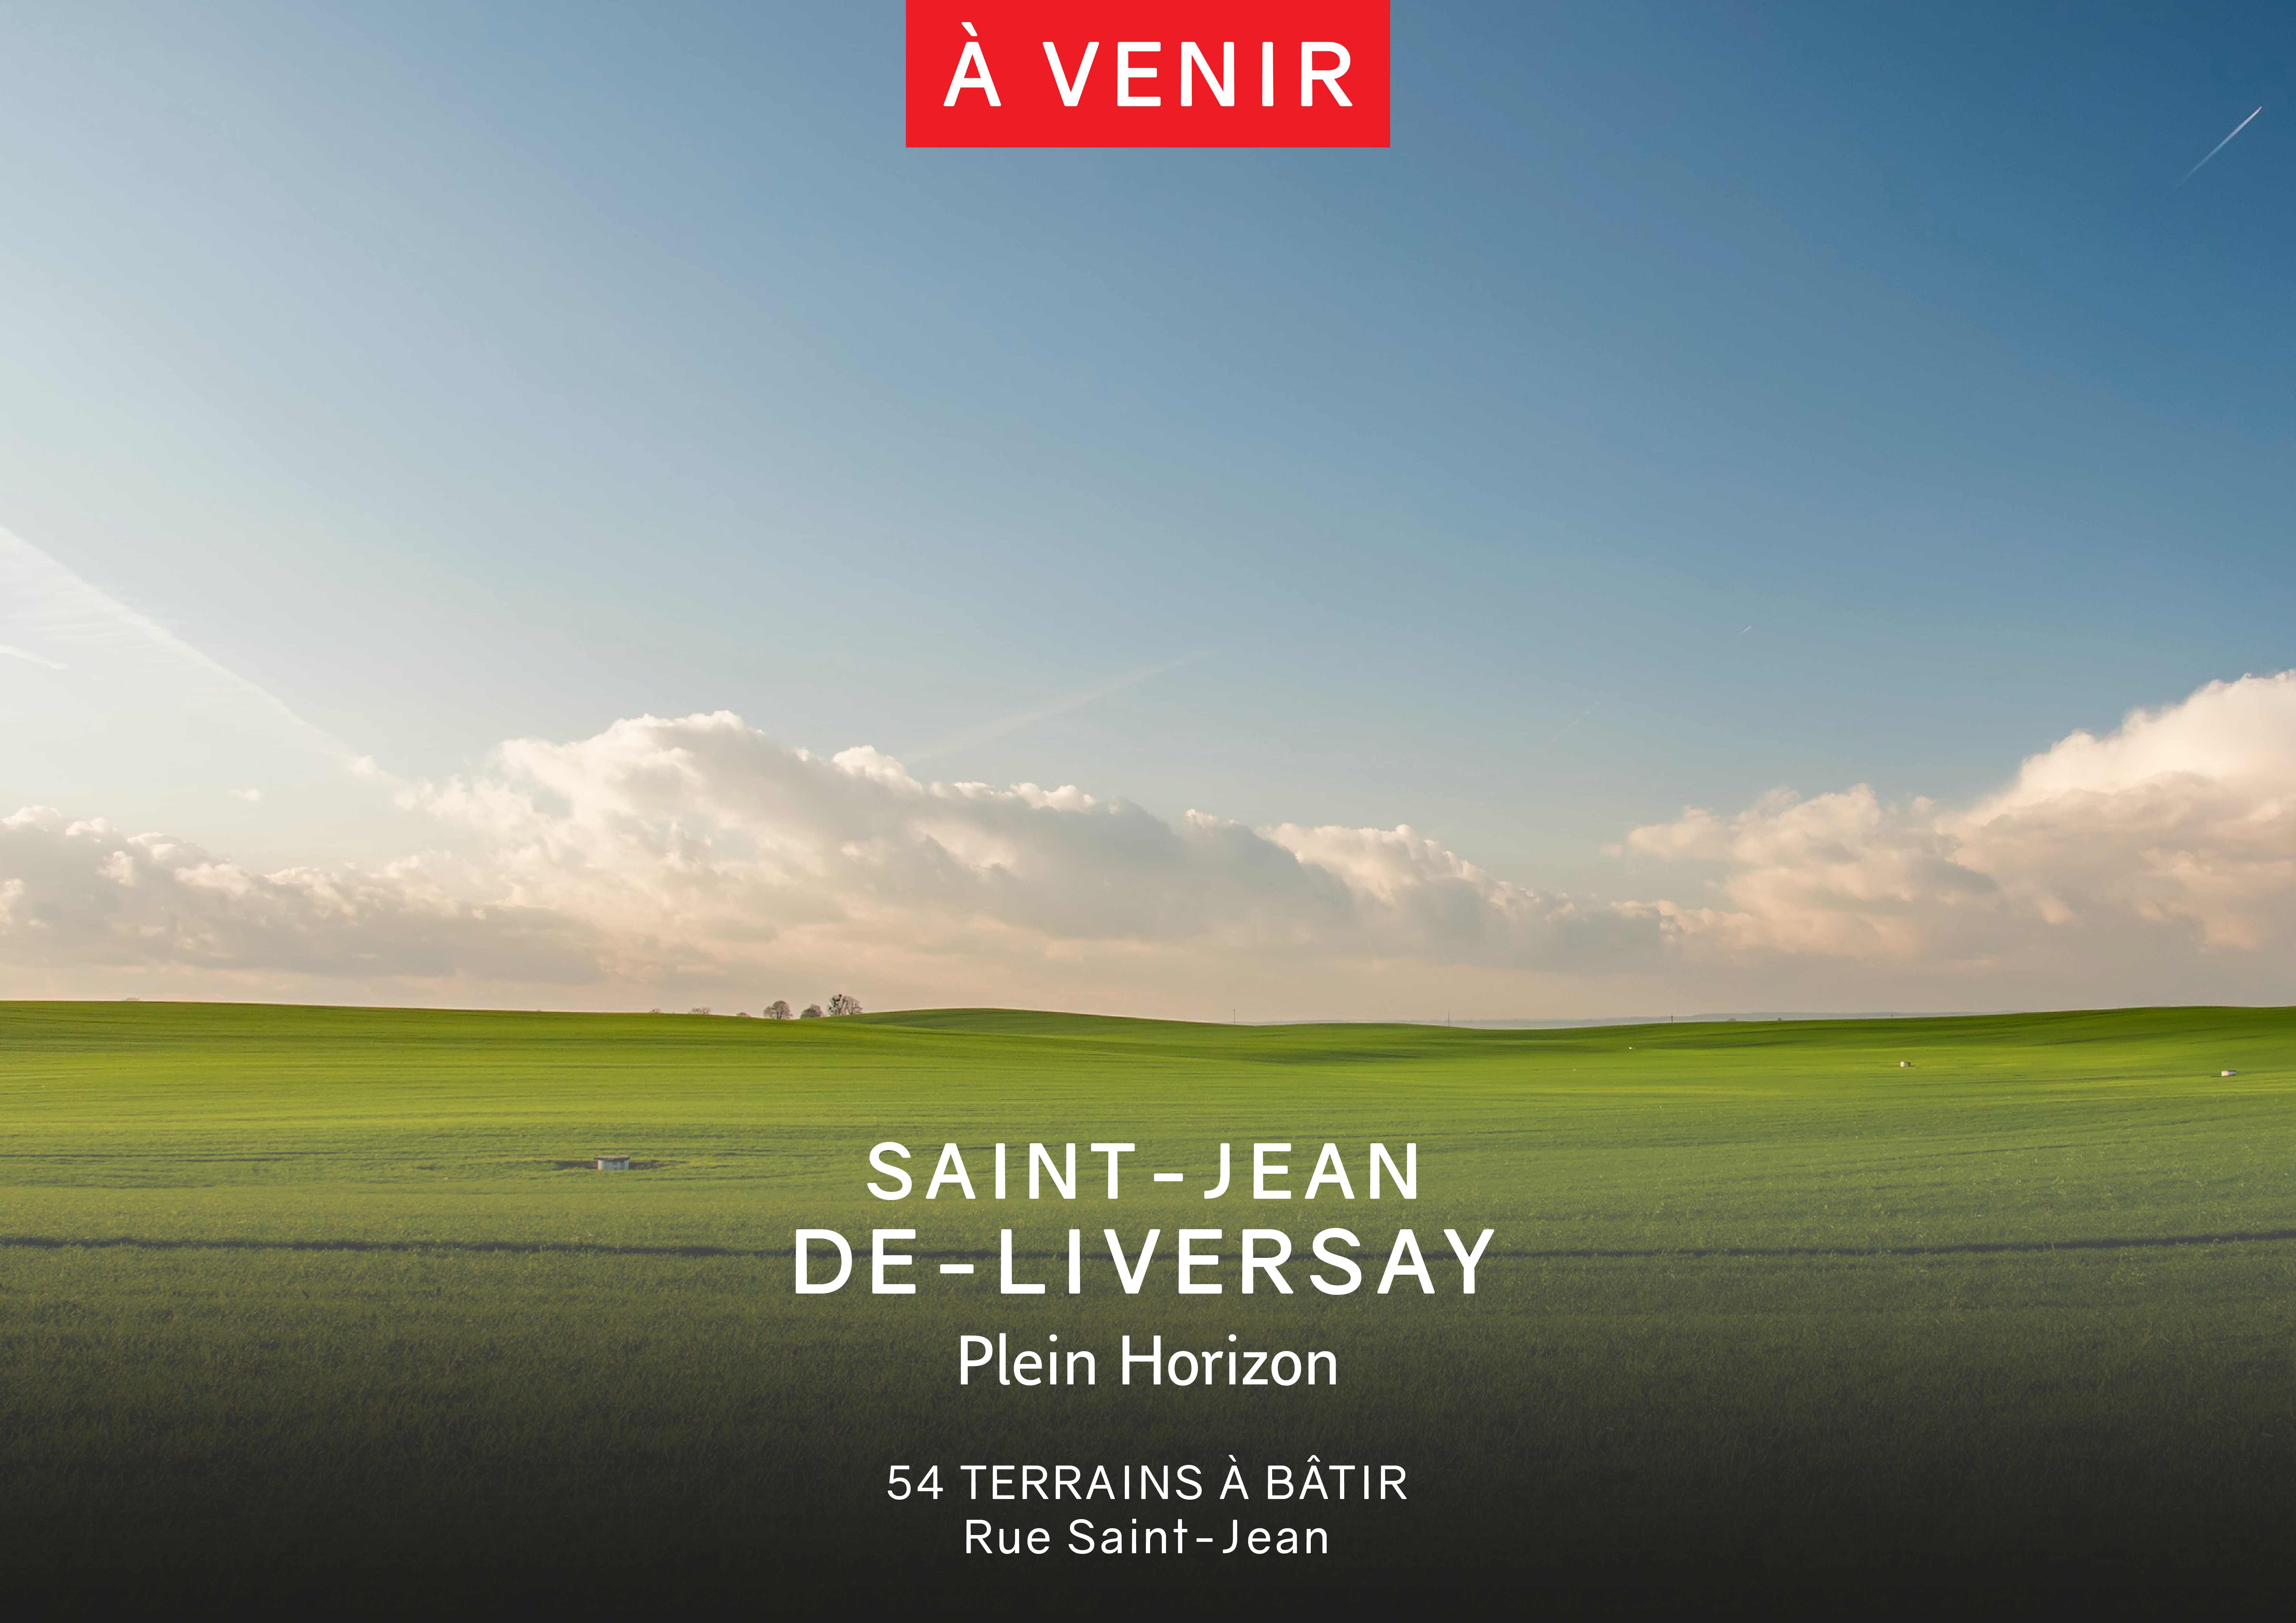 🚨 Terrains à bâtir – Un nouveau programme arrive à Saint-Jean-de-Liversay 🚨